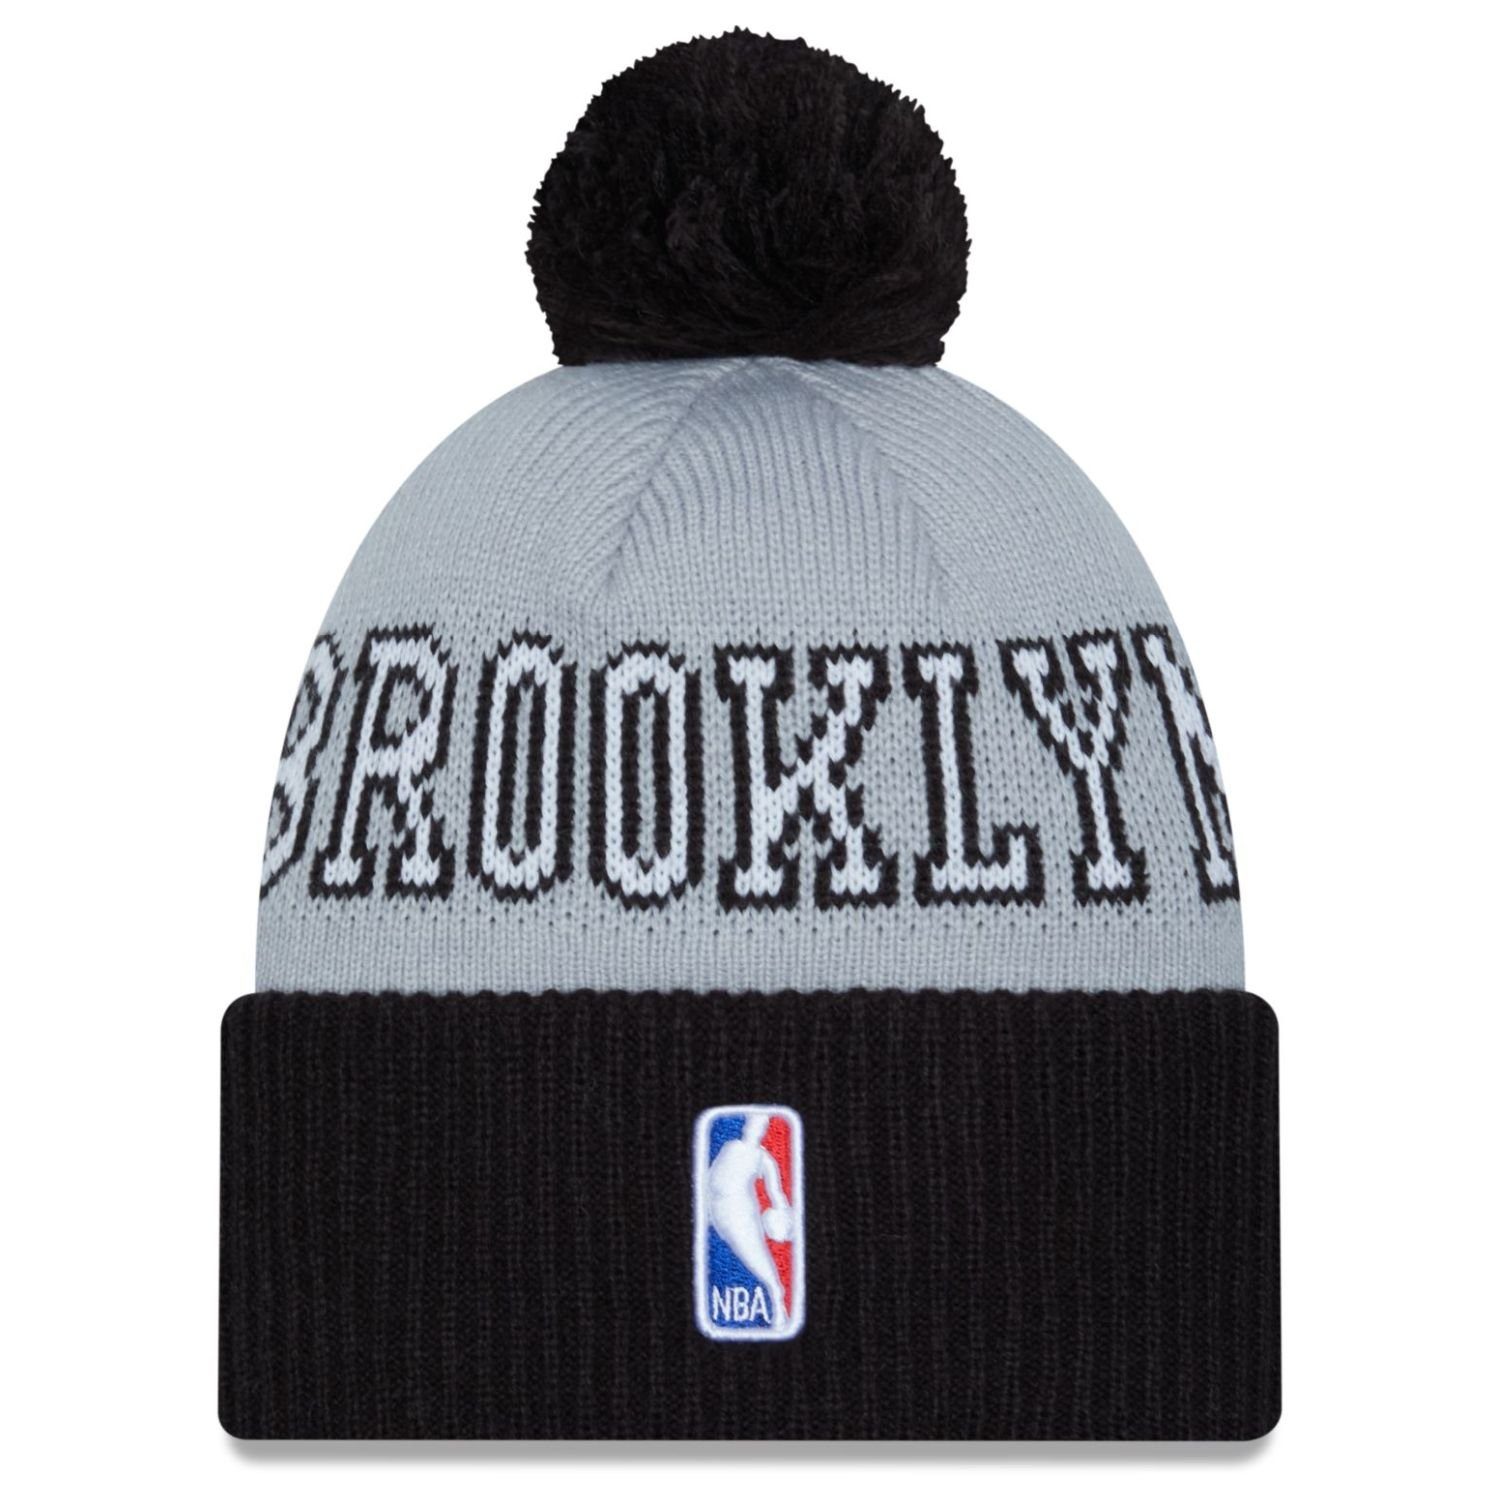 Fleecemütze Bobble TIP Era NBA OFF New Brooklyn Nets